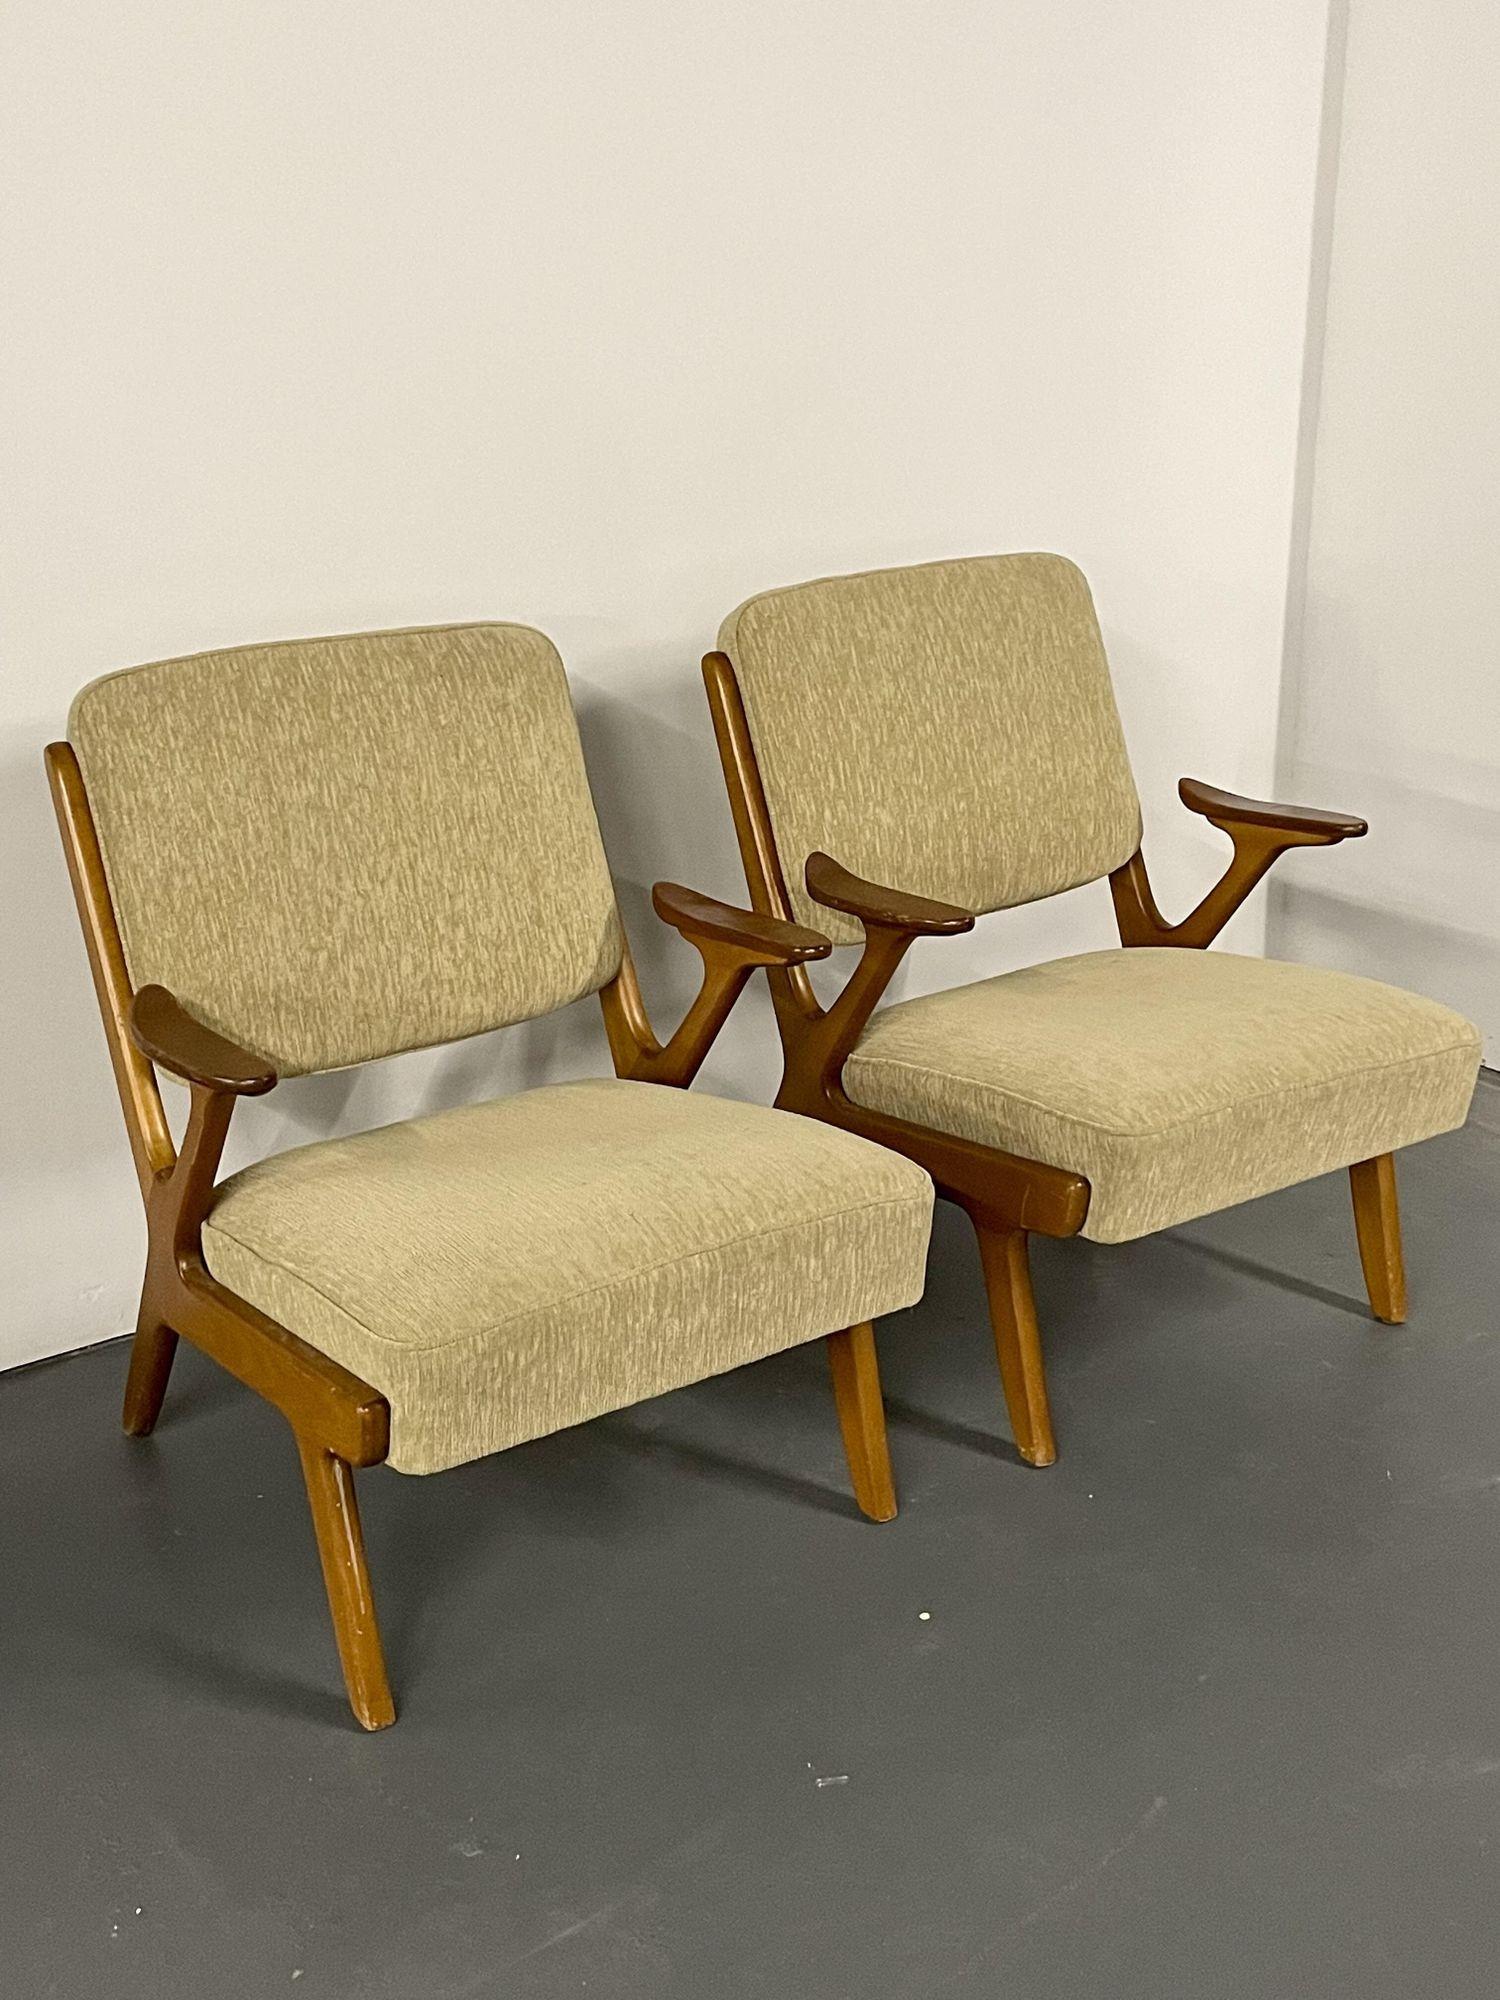 Paar Mid-Century Modern Sessel / Lounge Sessel, Schweden, 1960er Jahre. 
 
Einzigartige, organisch geformte schwedische Designer-Lounge oder Sessel aus den 1960er Jahren für den schwedischen Hersteller Svegards Makaryd.
 
Weitere skandinavische